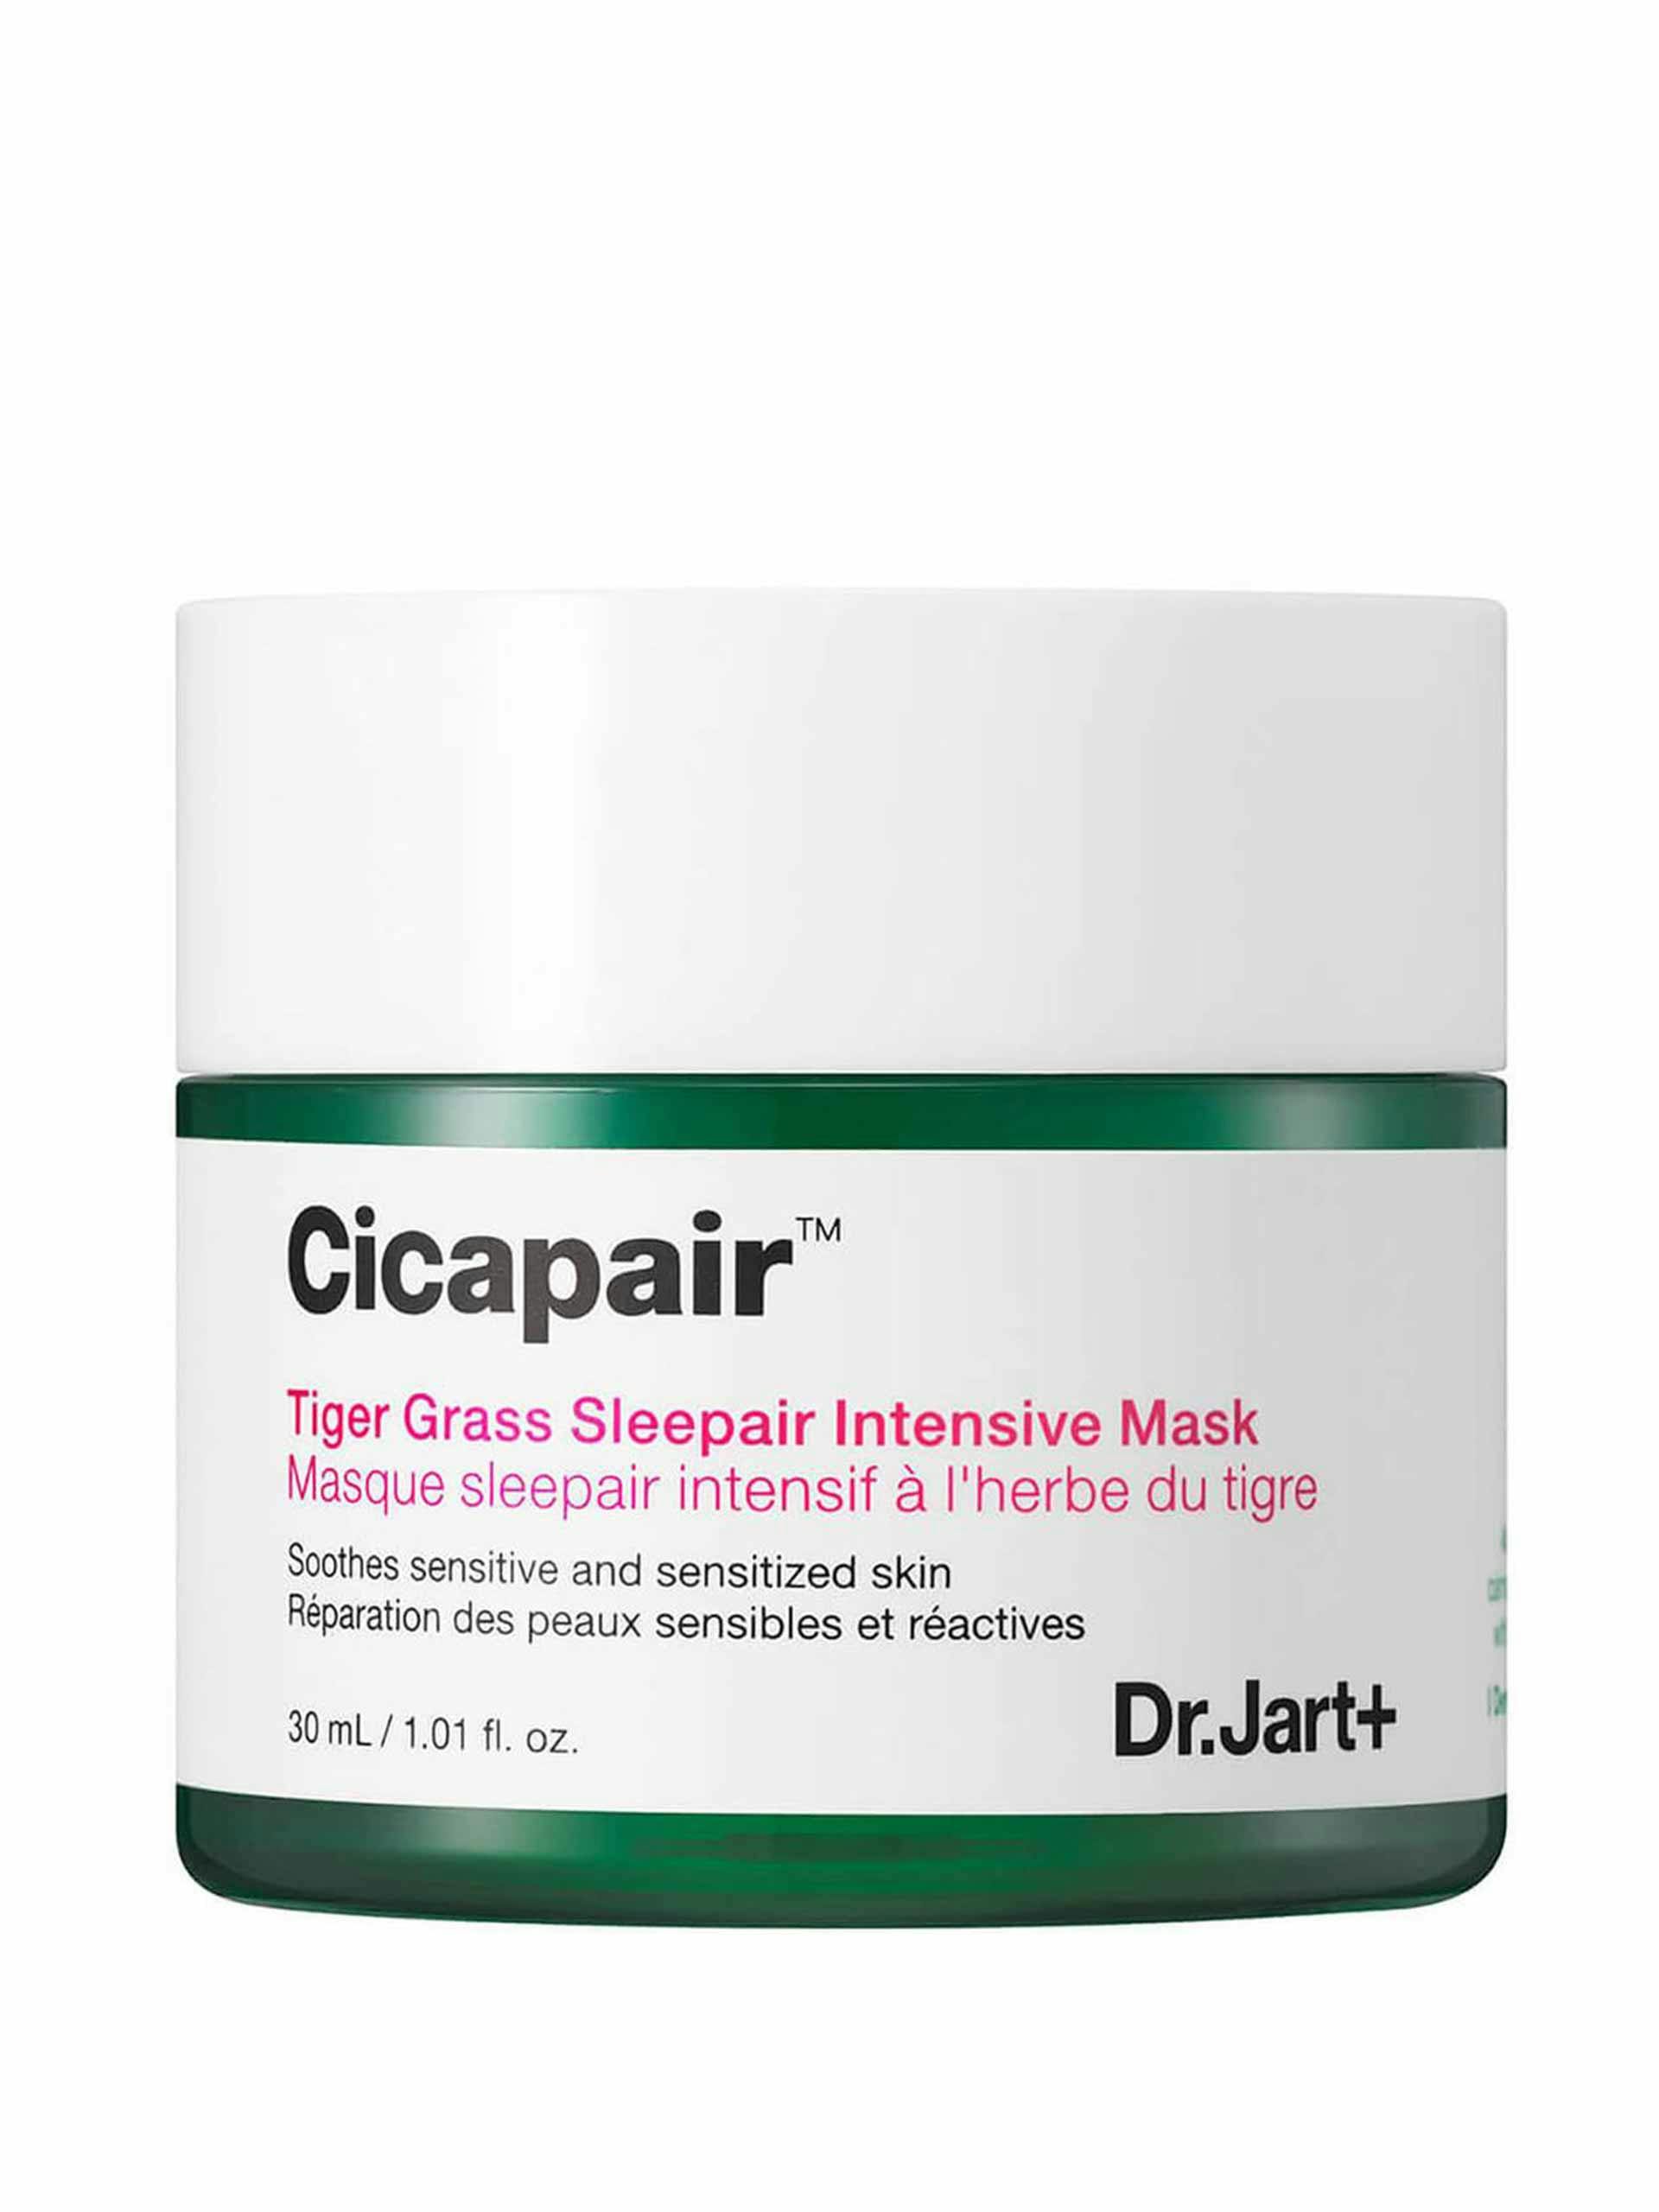 Cicapair intensive mask